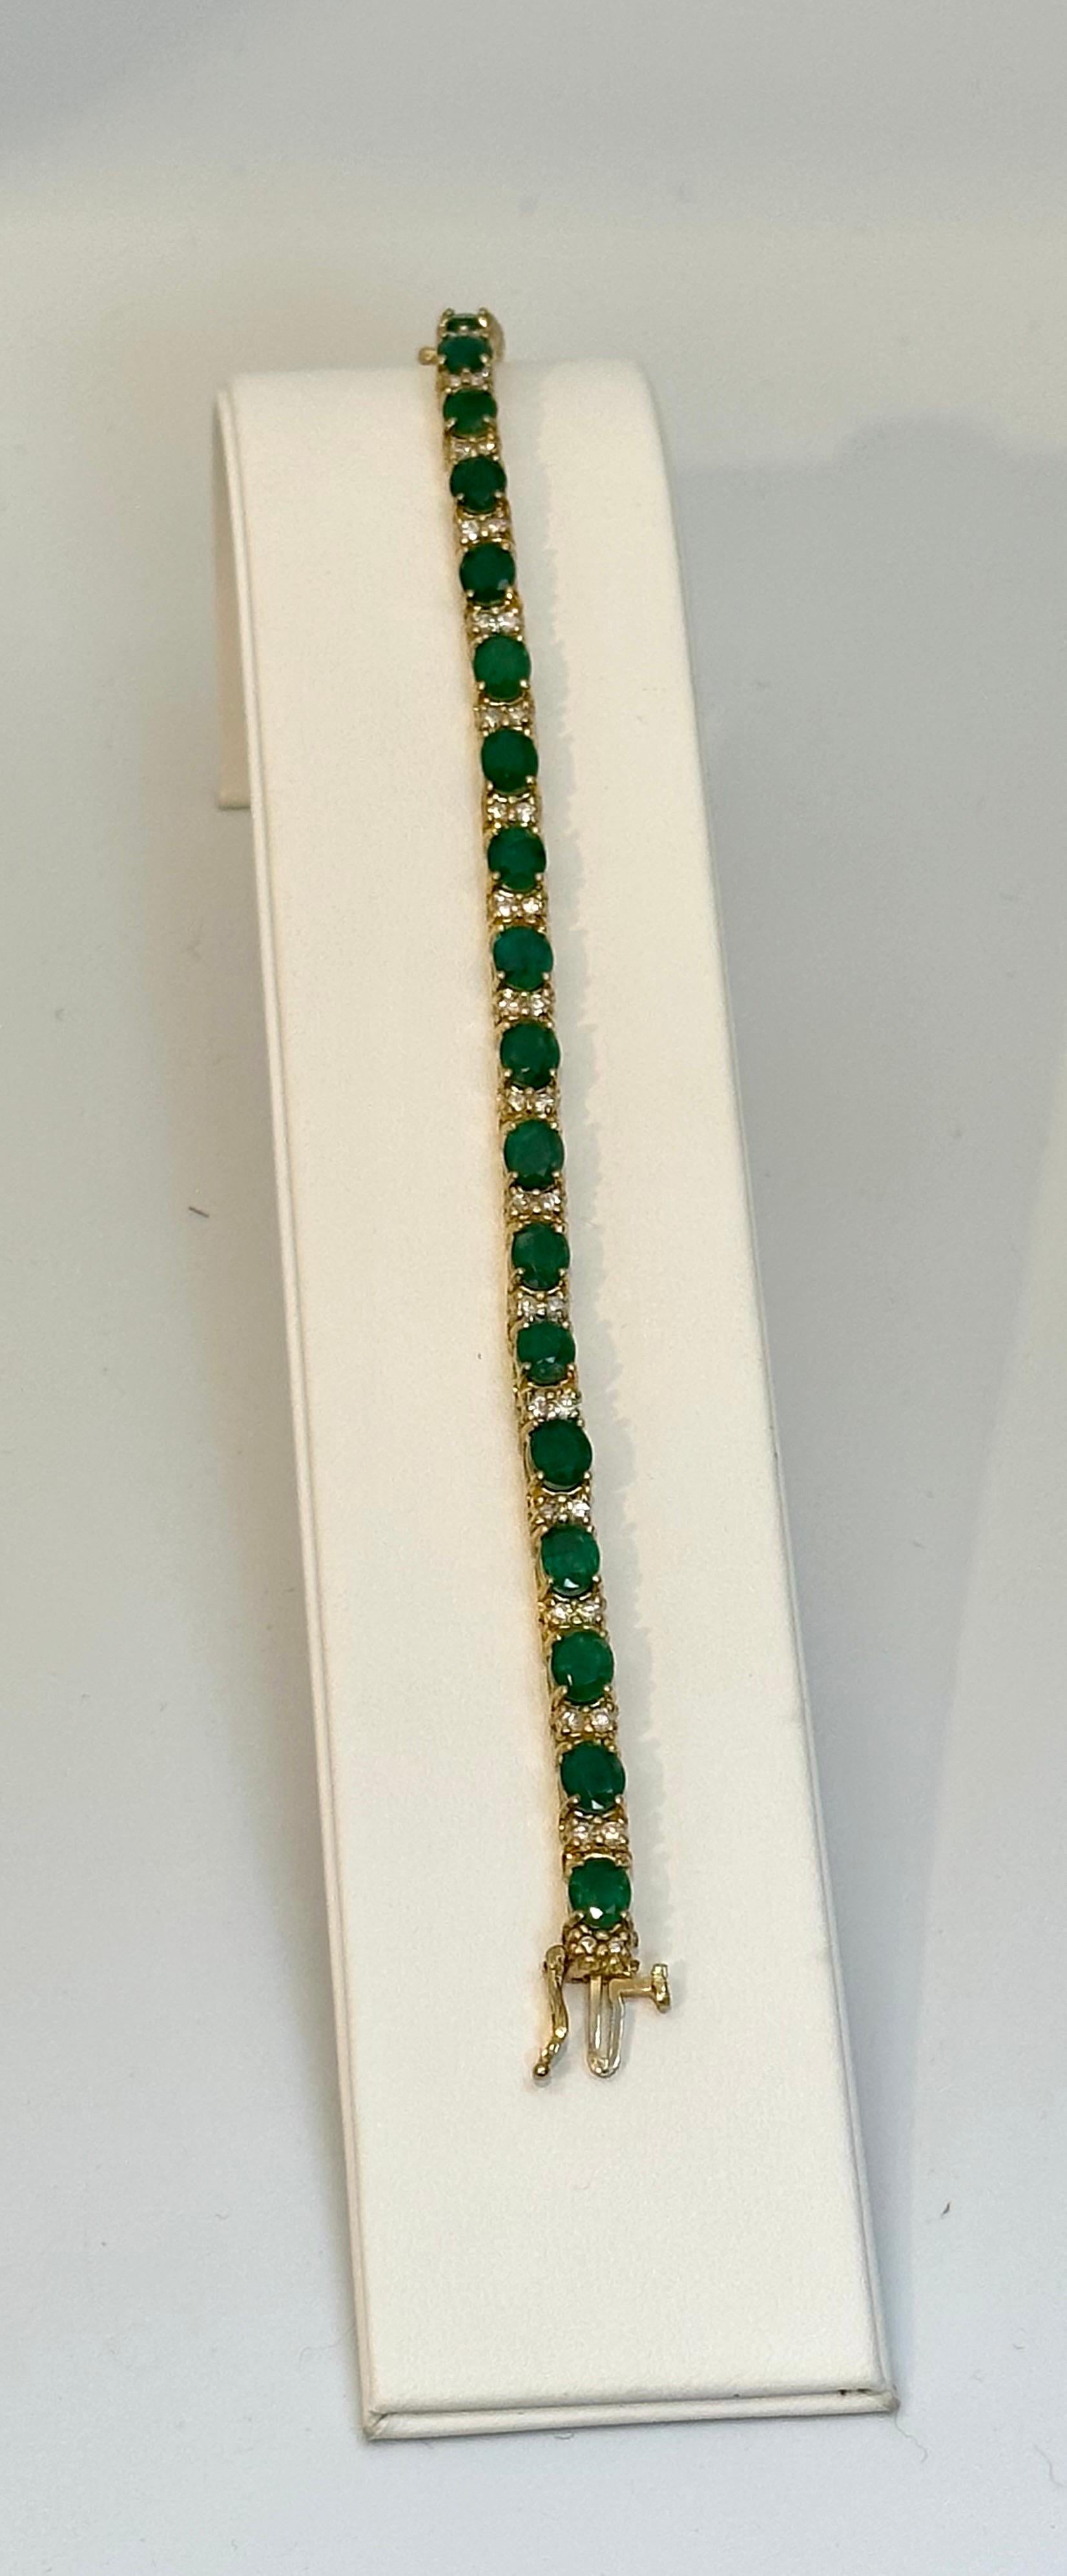 13 Carat Natural Emerald & Diamond Cocktail Tennis Bracelet 14 Karat Yellow Gold 14